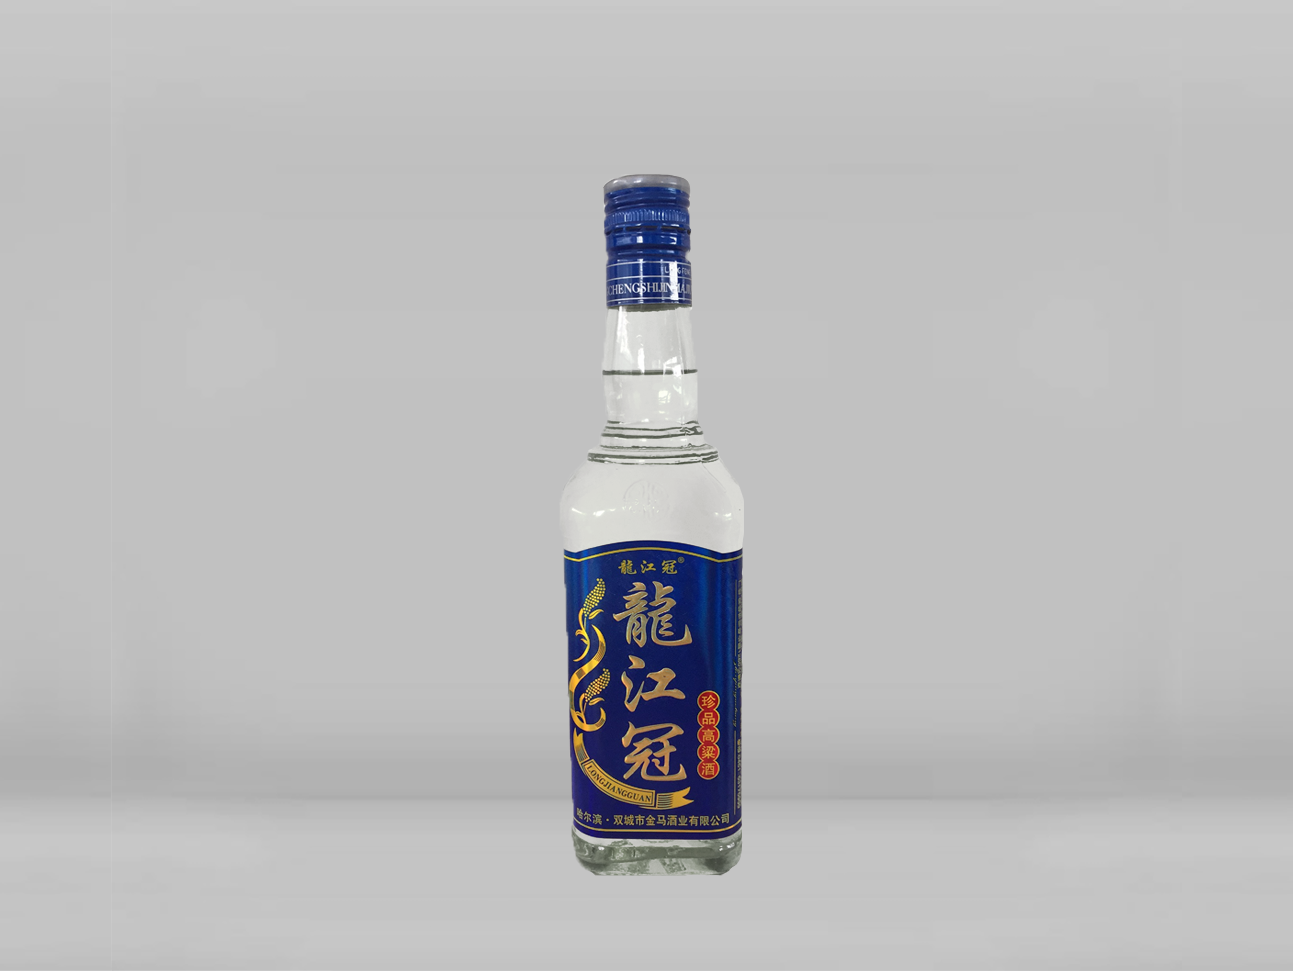 藍標珍品高粱酒42%vol 500ml 